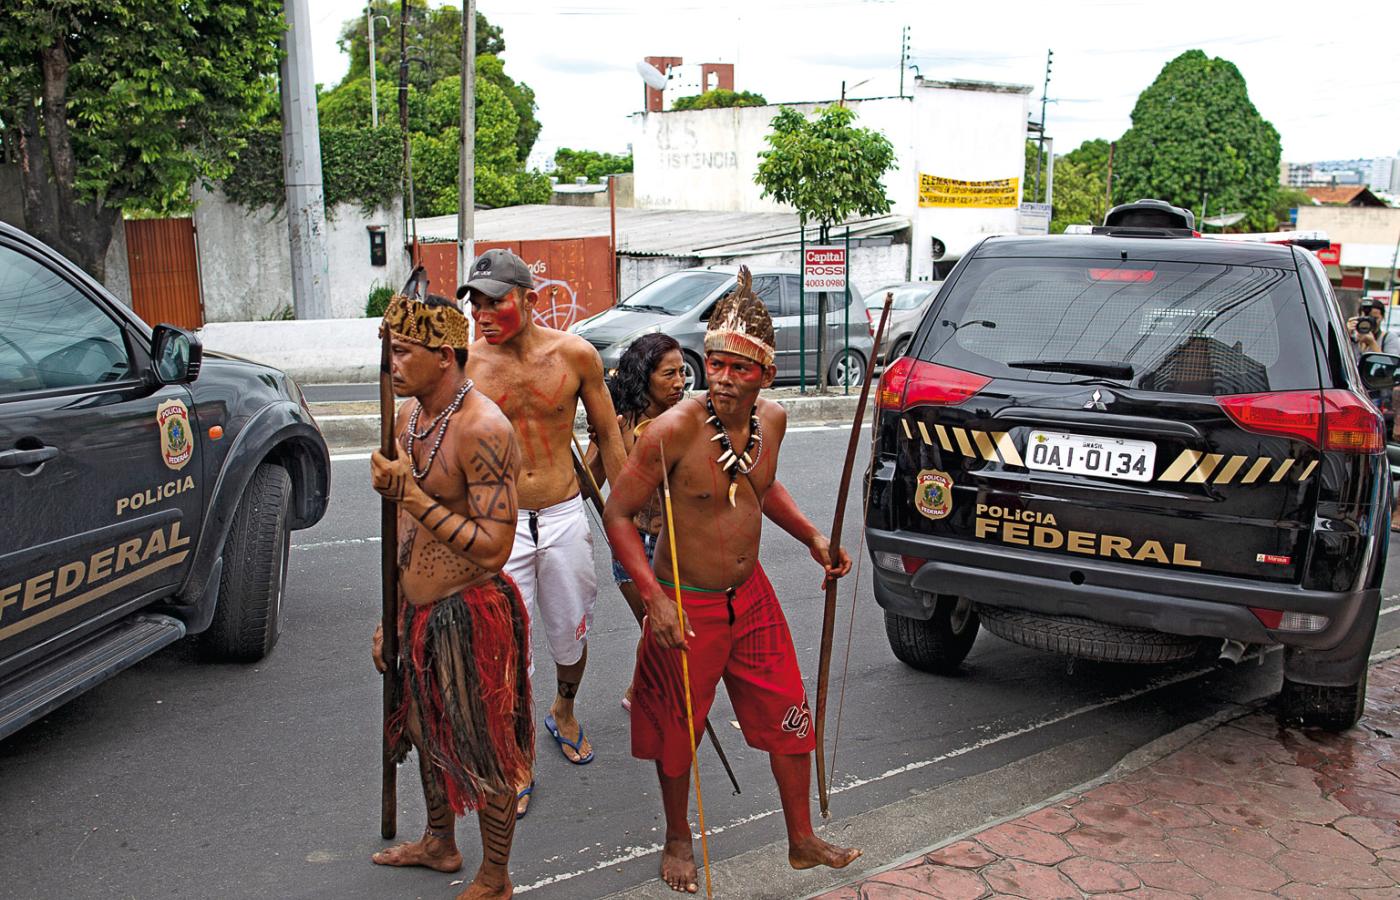 Amazońscy Indianie na ulicach Manaus, gdzie protestowali w styczniu 2014 r. przeciw szefowi rządowej agendy zajmującej się autochtonami.